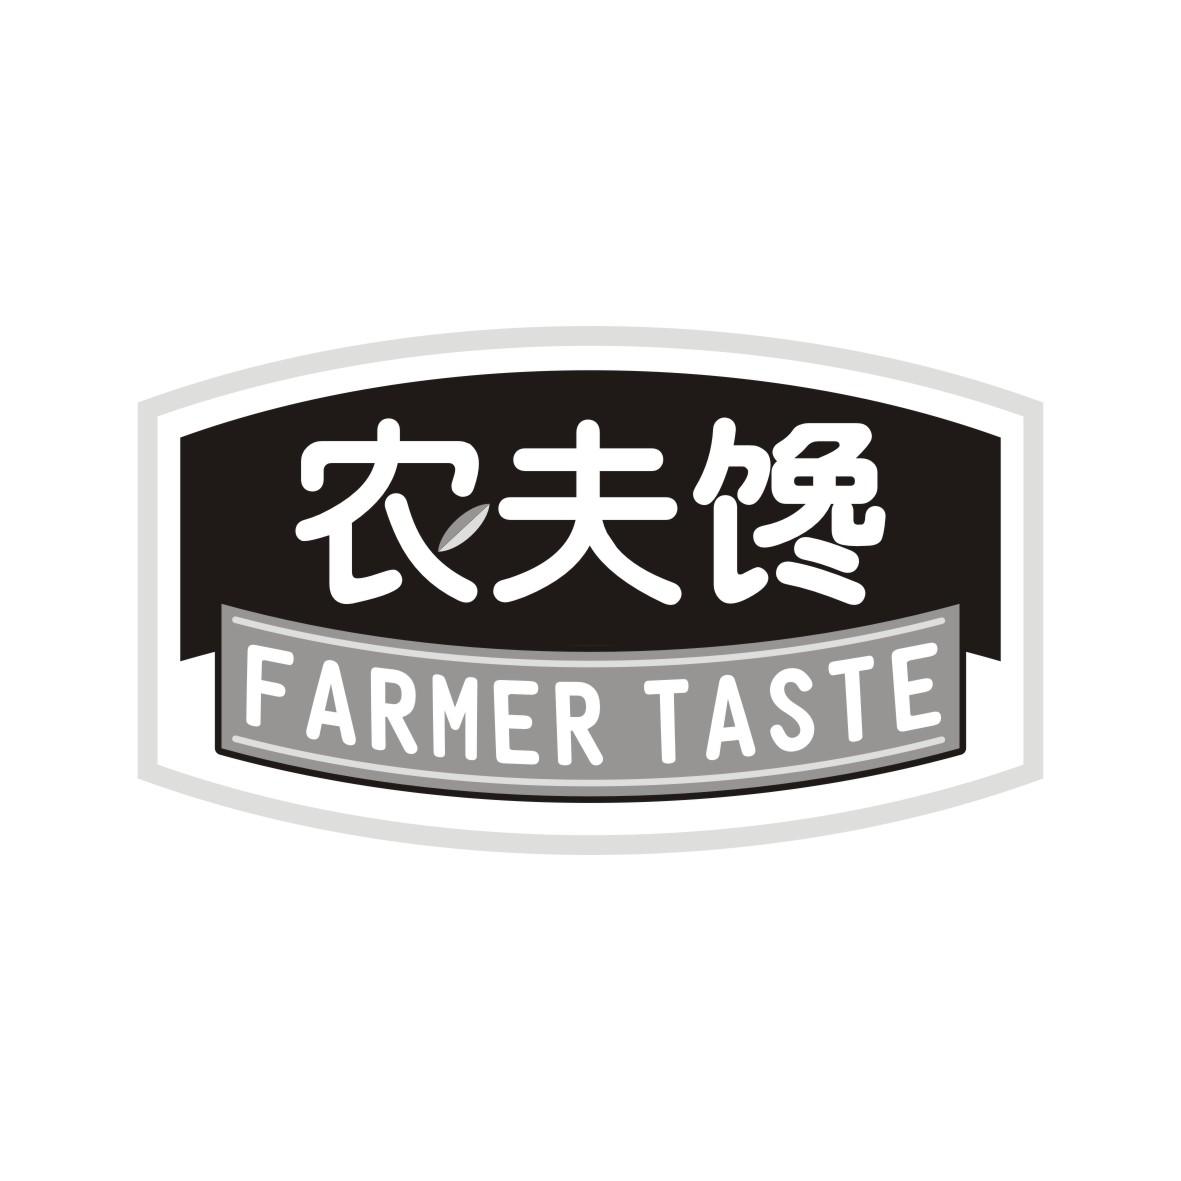 农夫馋 FARMER TASTE商标转让